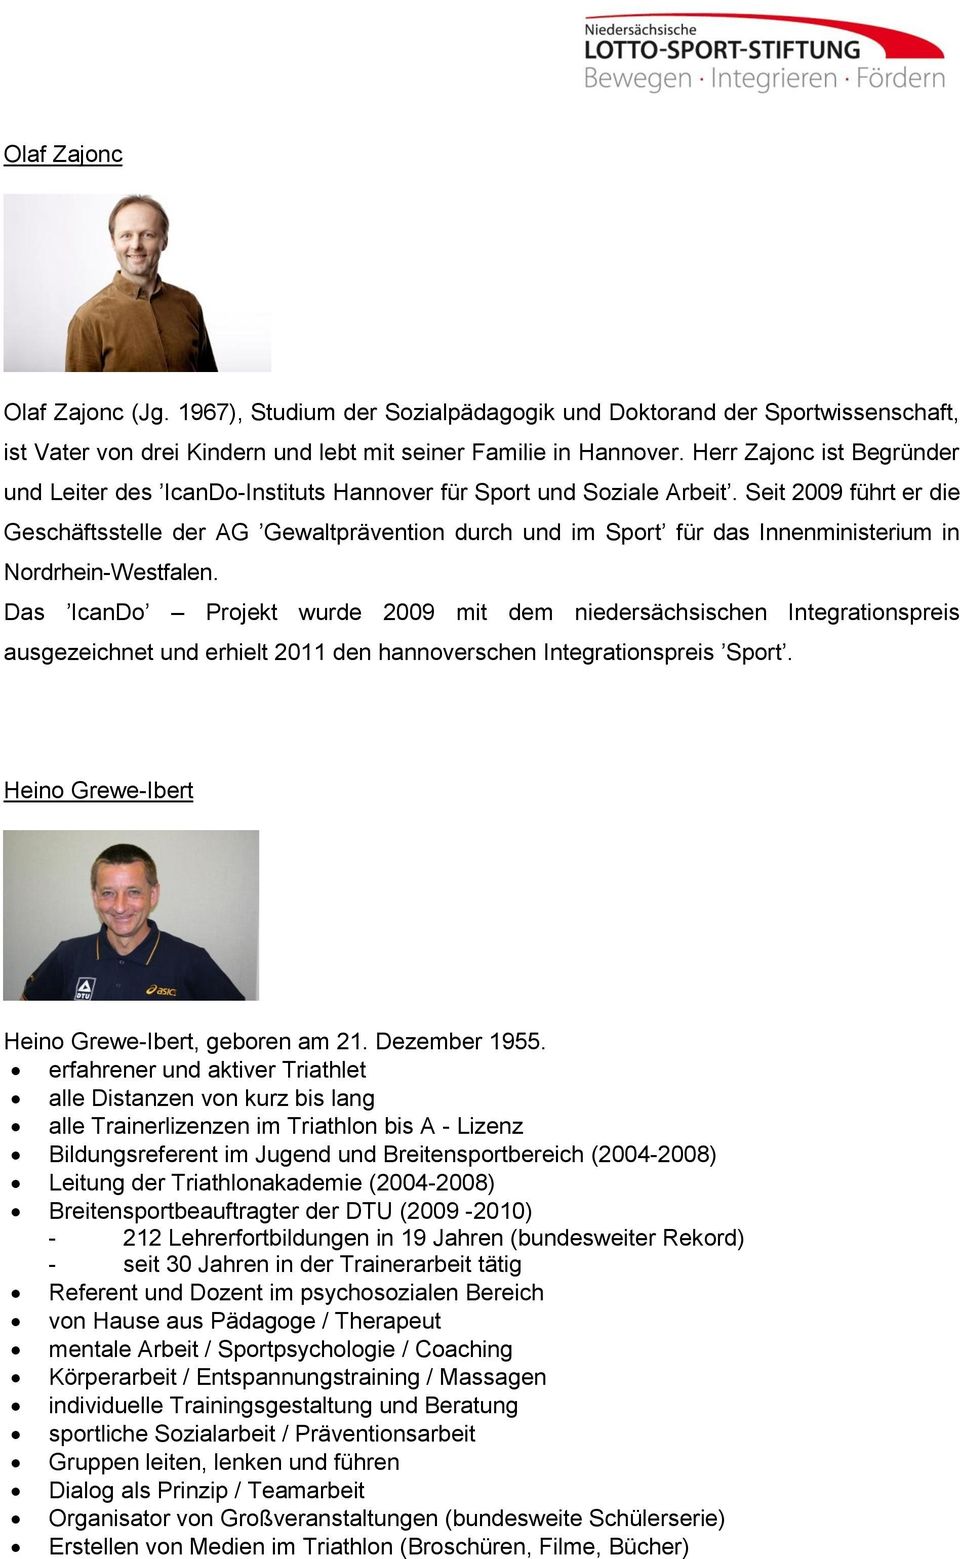 Seit 2009 führt er die Geschäftsstelle der AG Gewaltprävention durch und im Sport für das Innenministerium in Nordrhein-Westfalen.